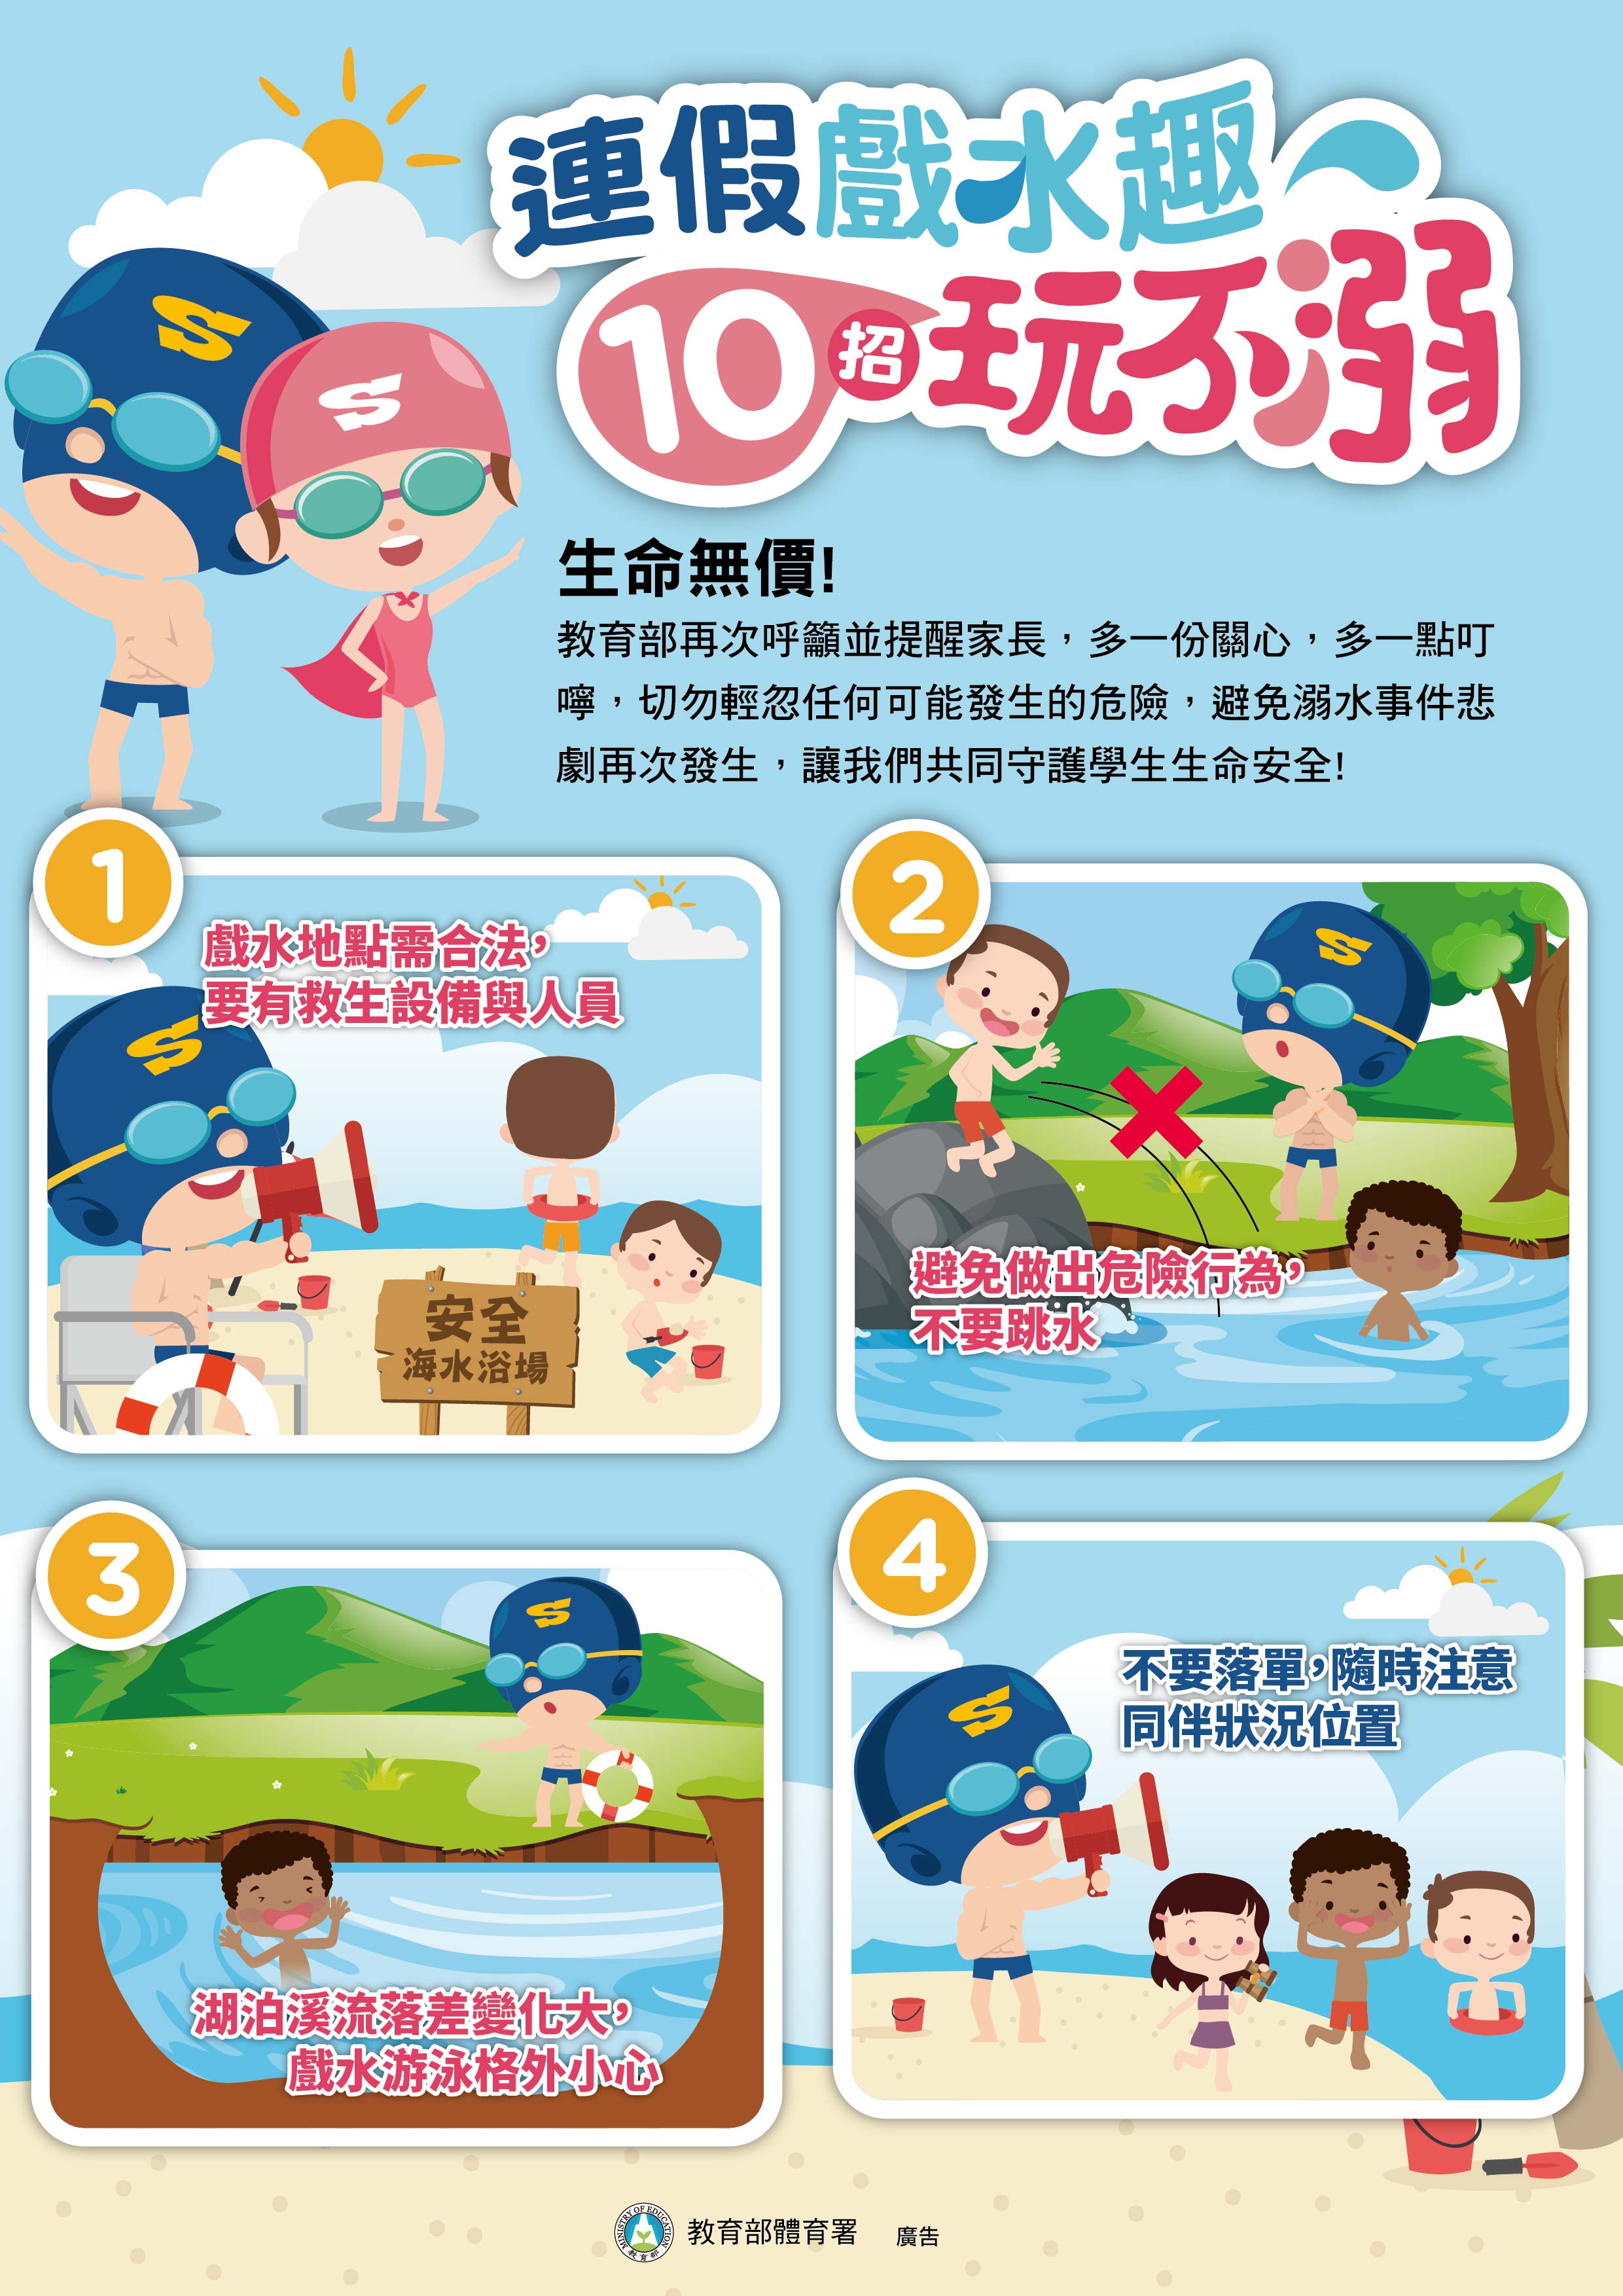 10招玩不溺-1.jpg